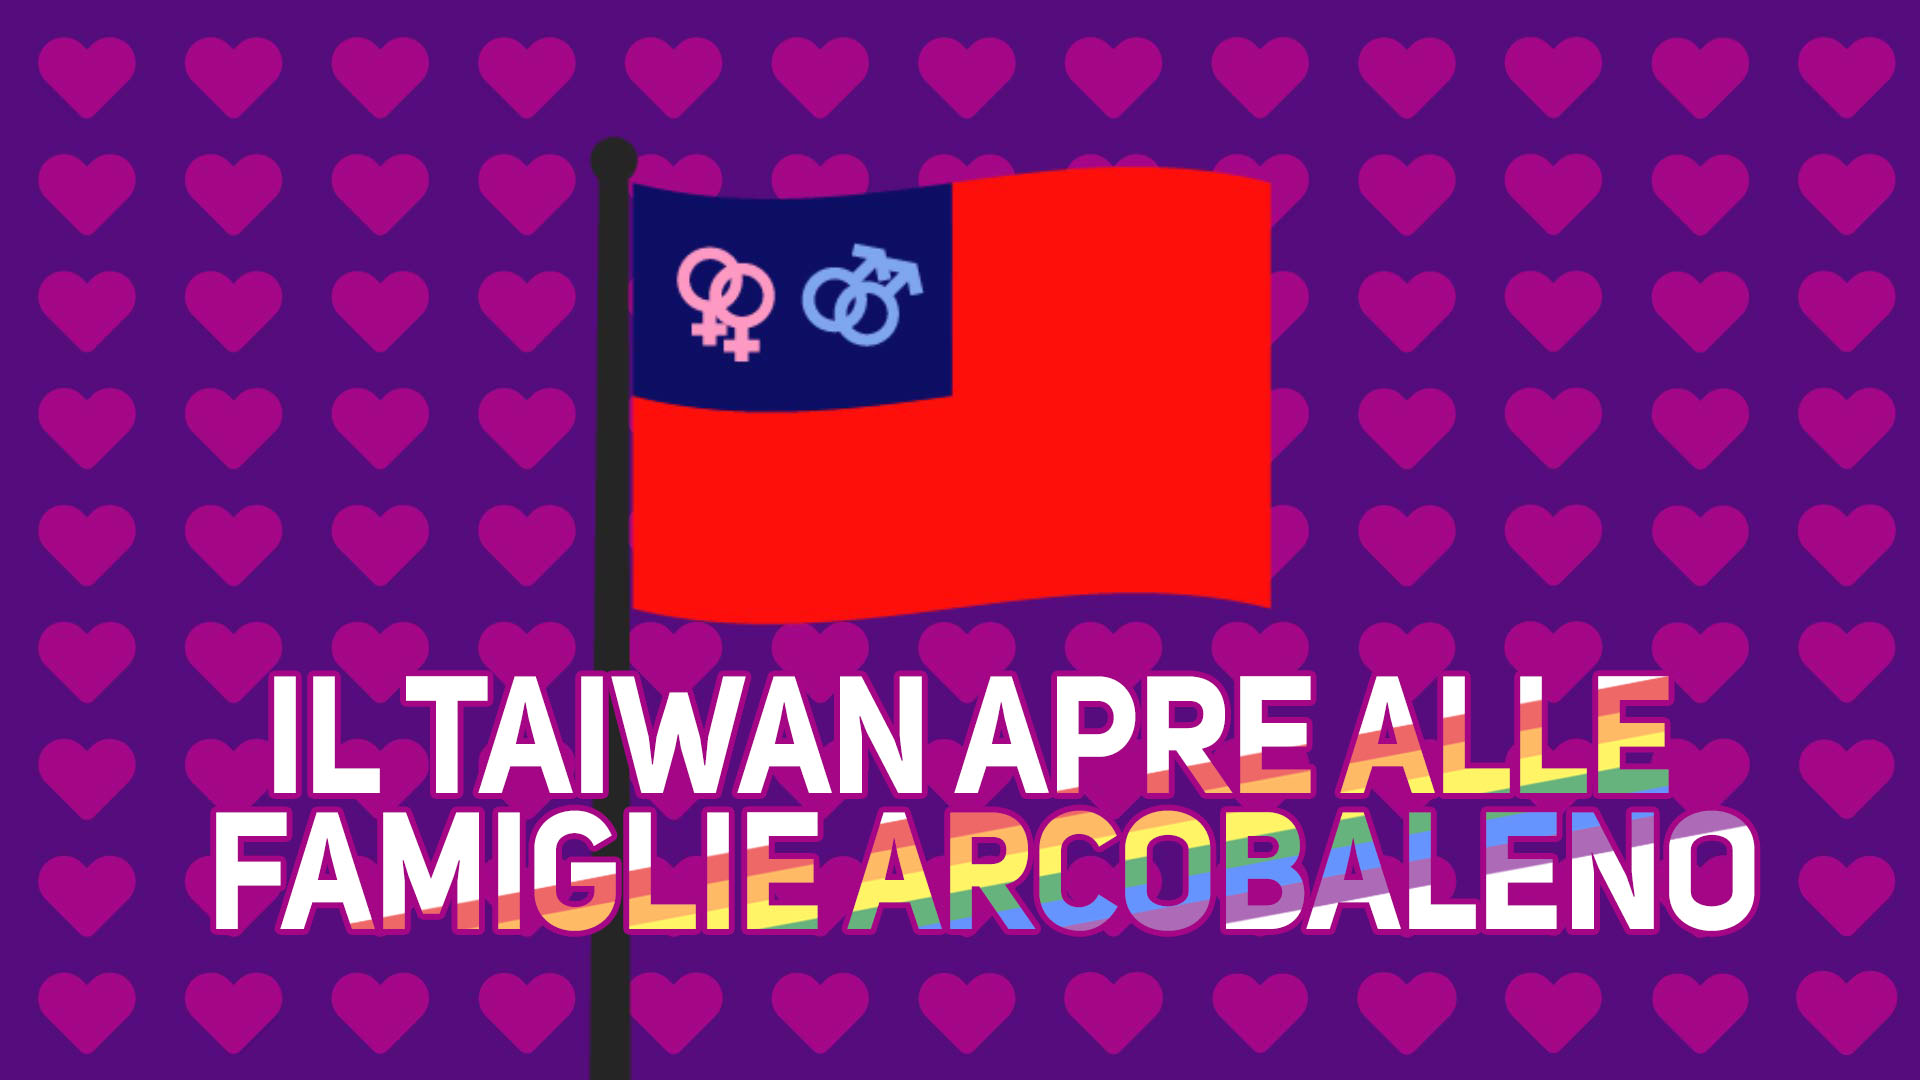 Buone notizie: Taiwan legalizzera' i matrimoni gay